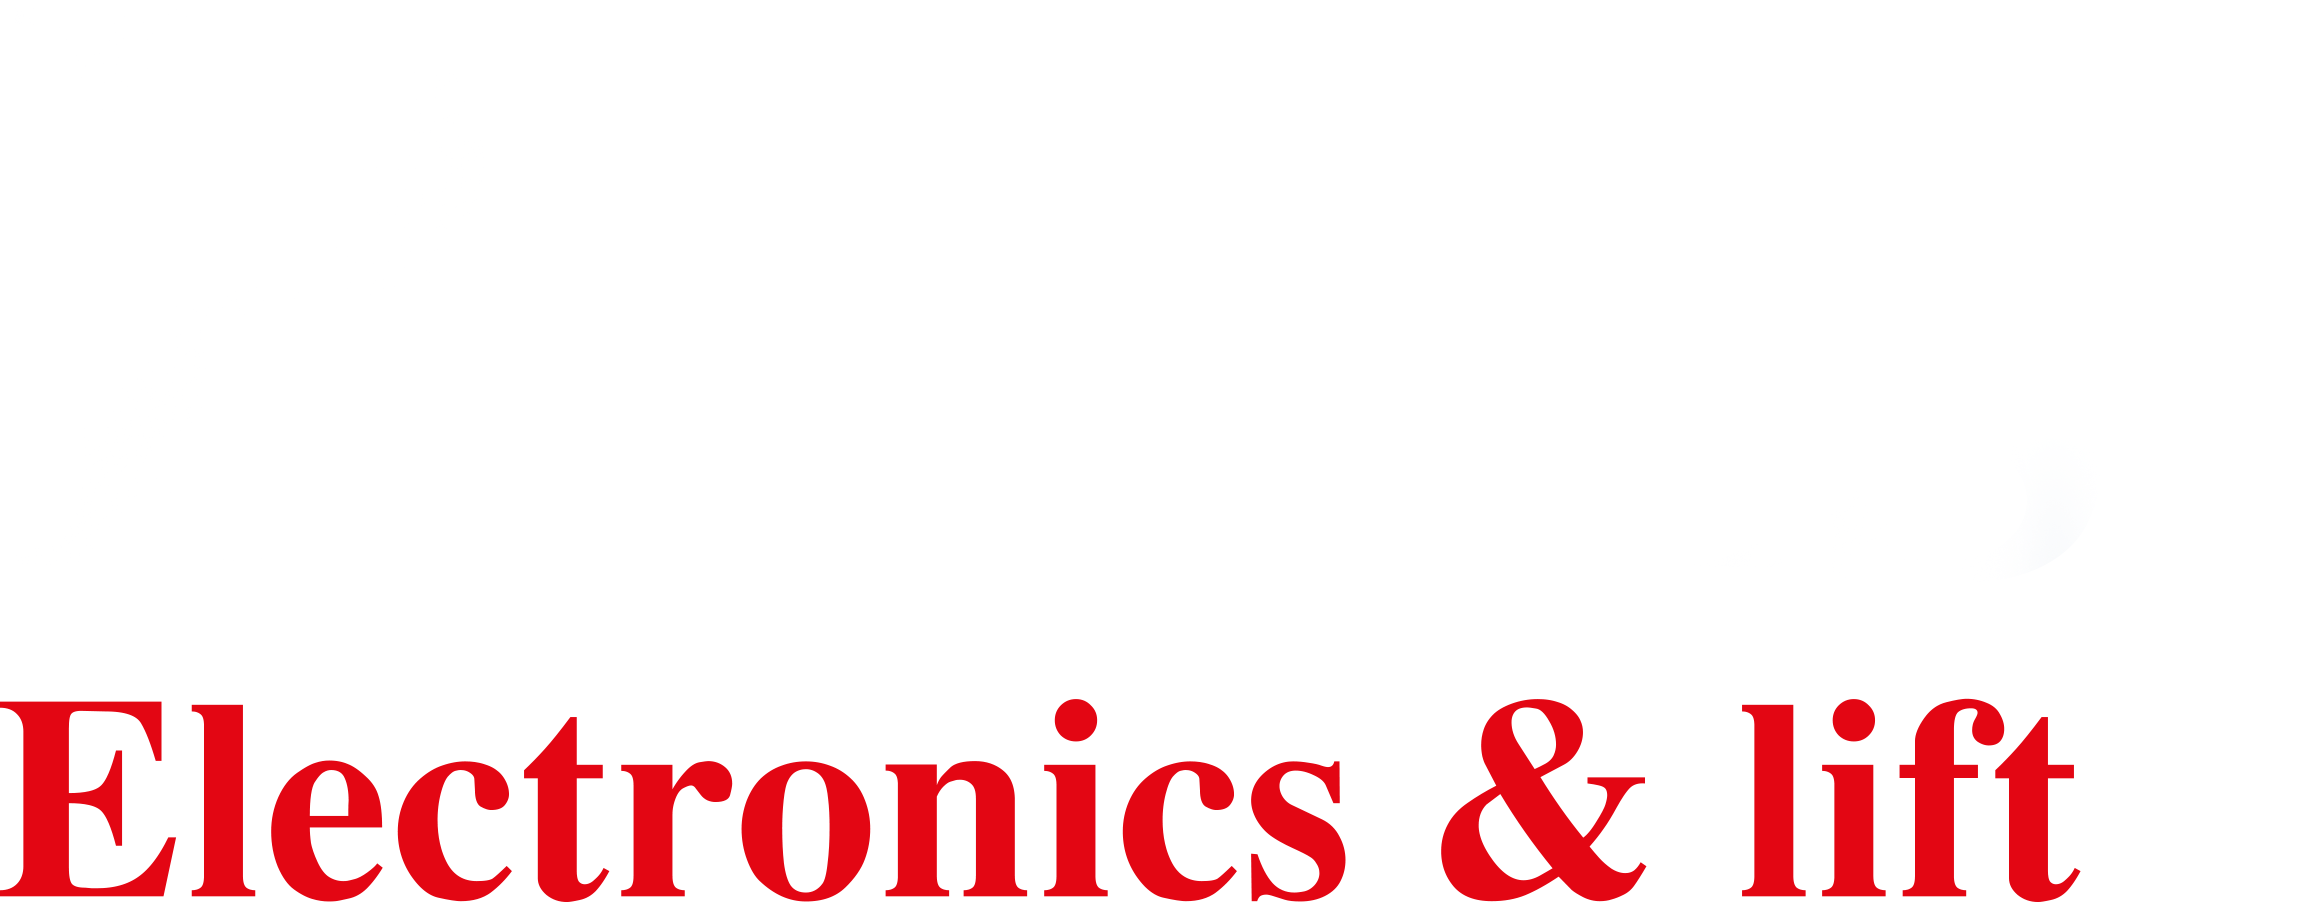 Prosis Electronics